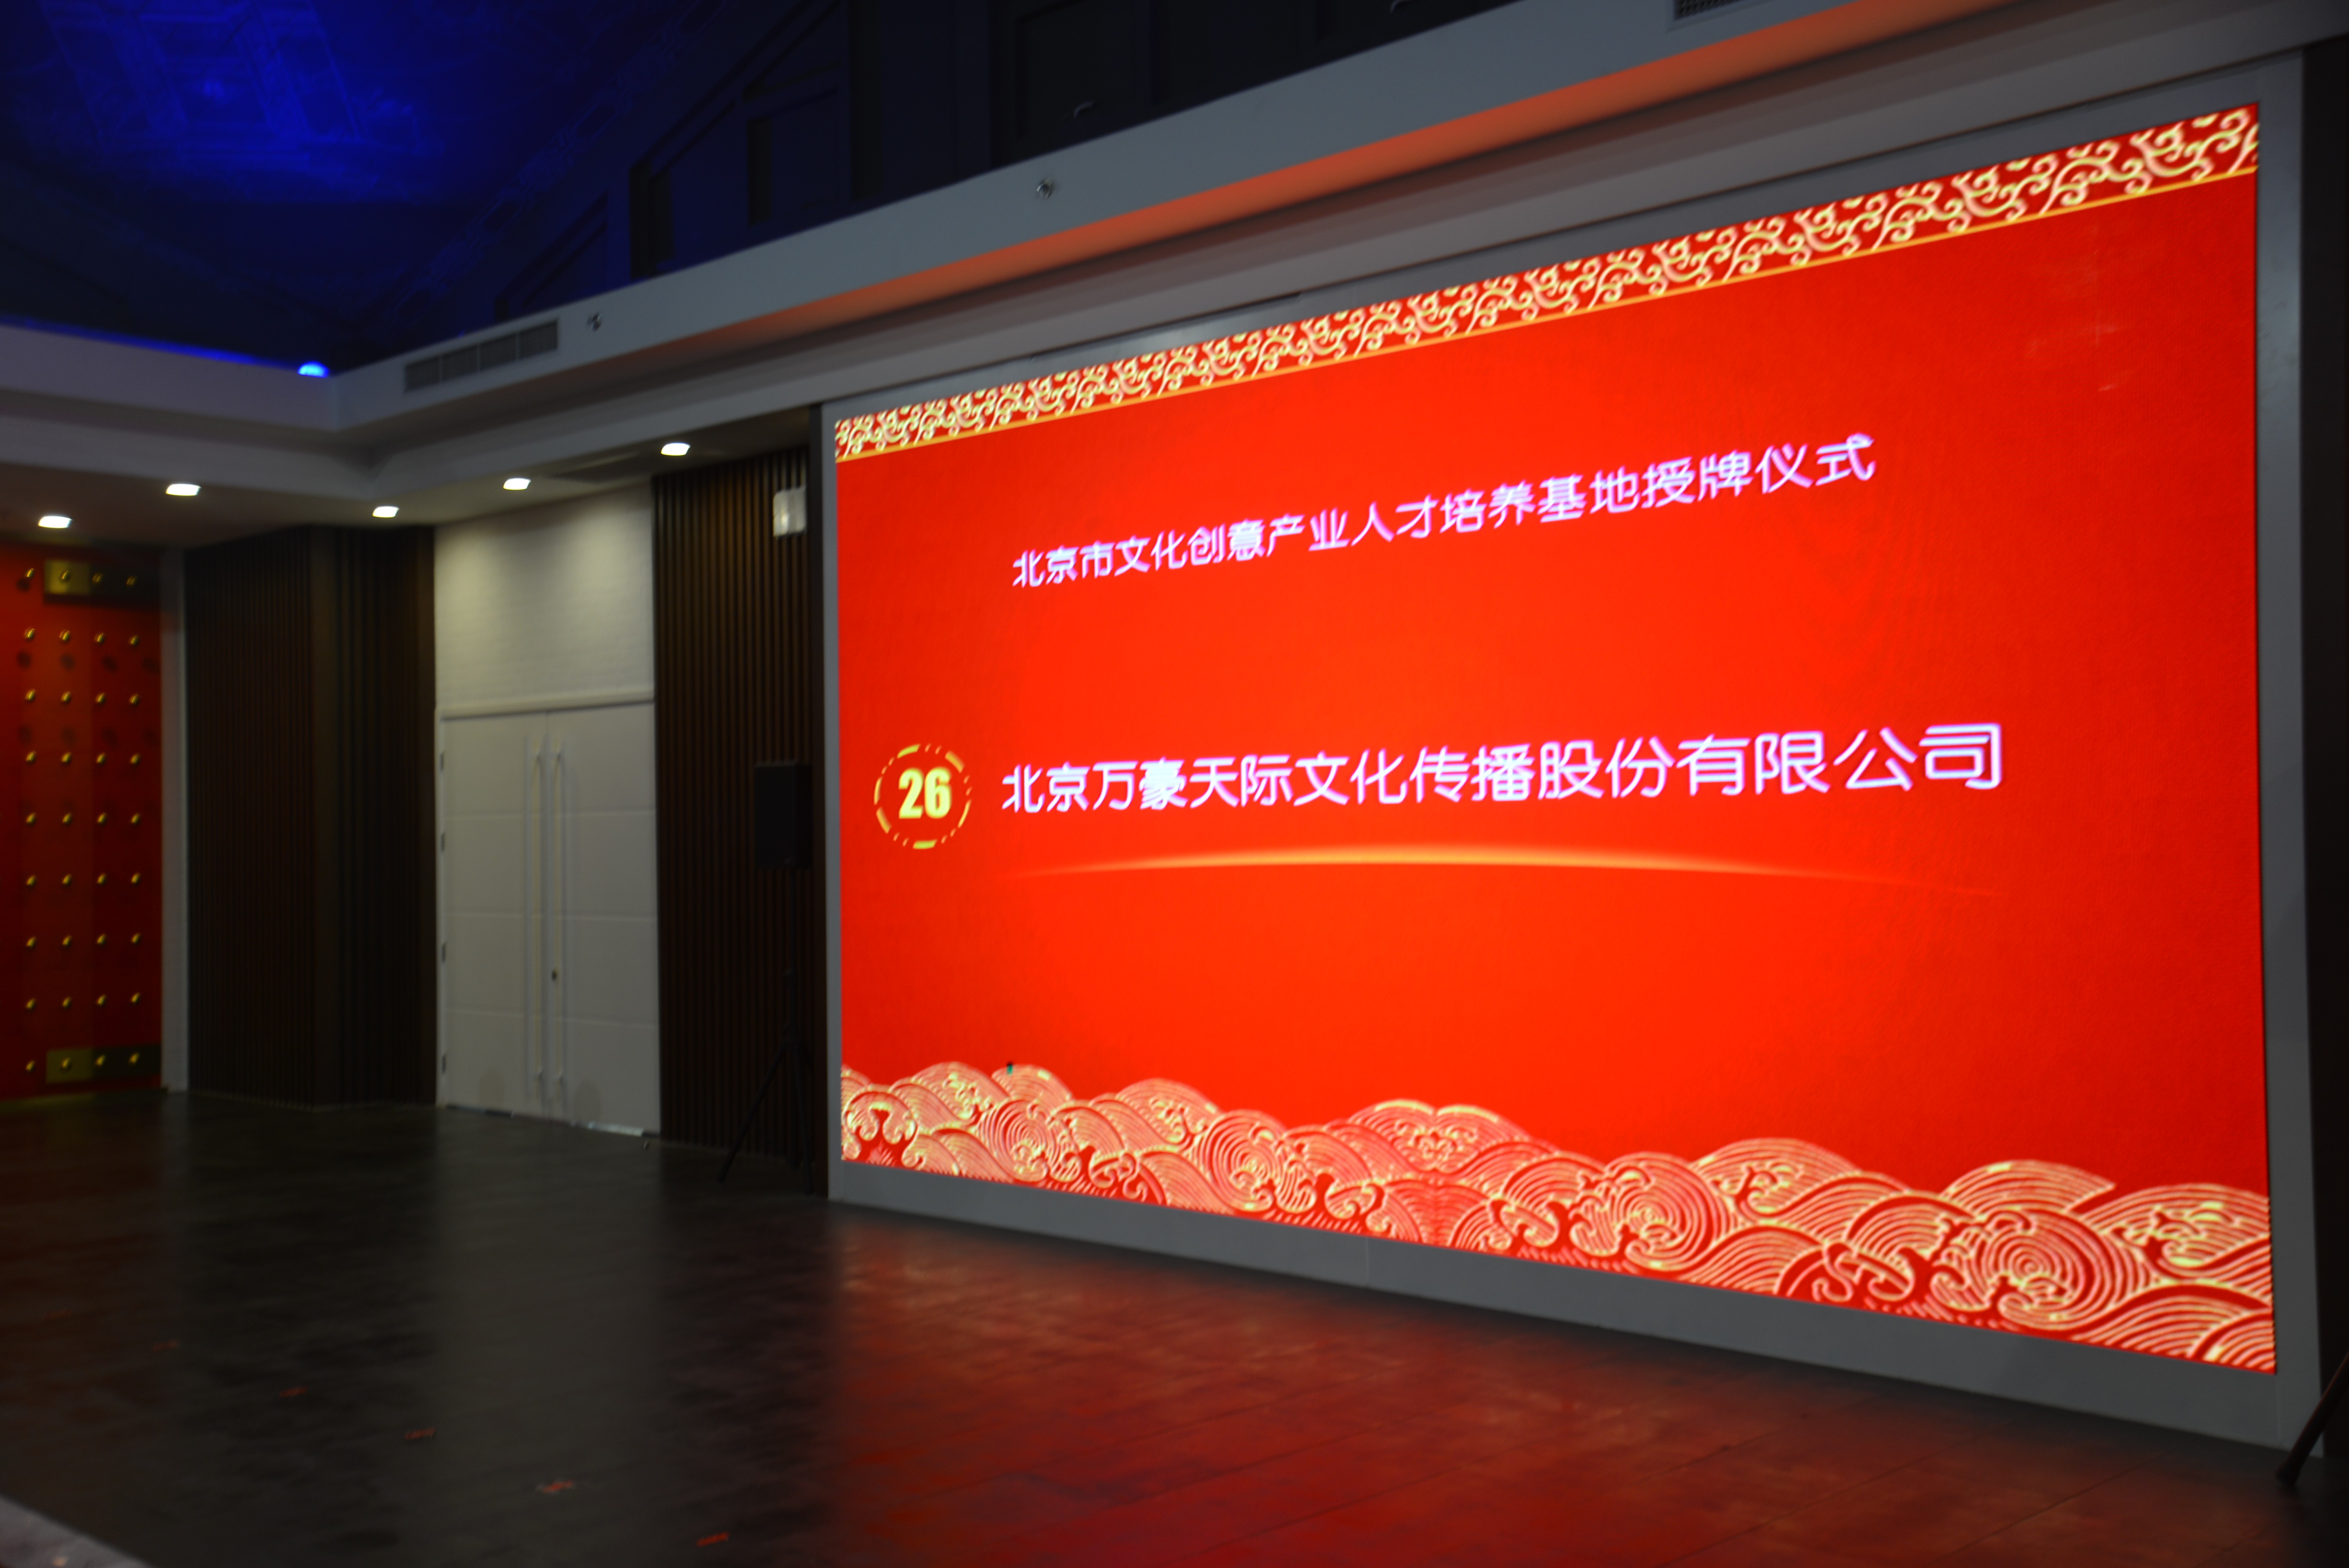 万豪卡通职业技能培训学校成功申办北京市文化创意产业人才培养基地